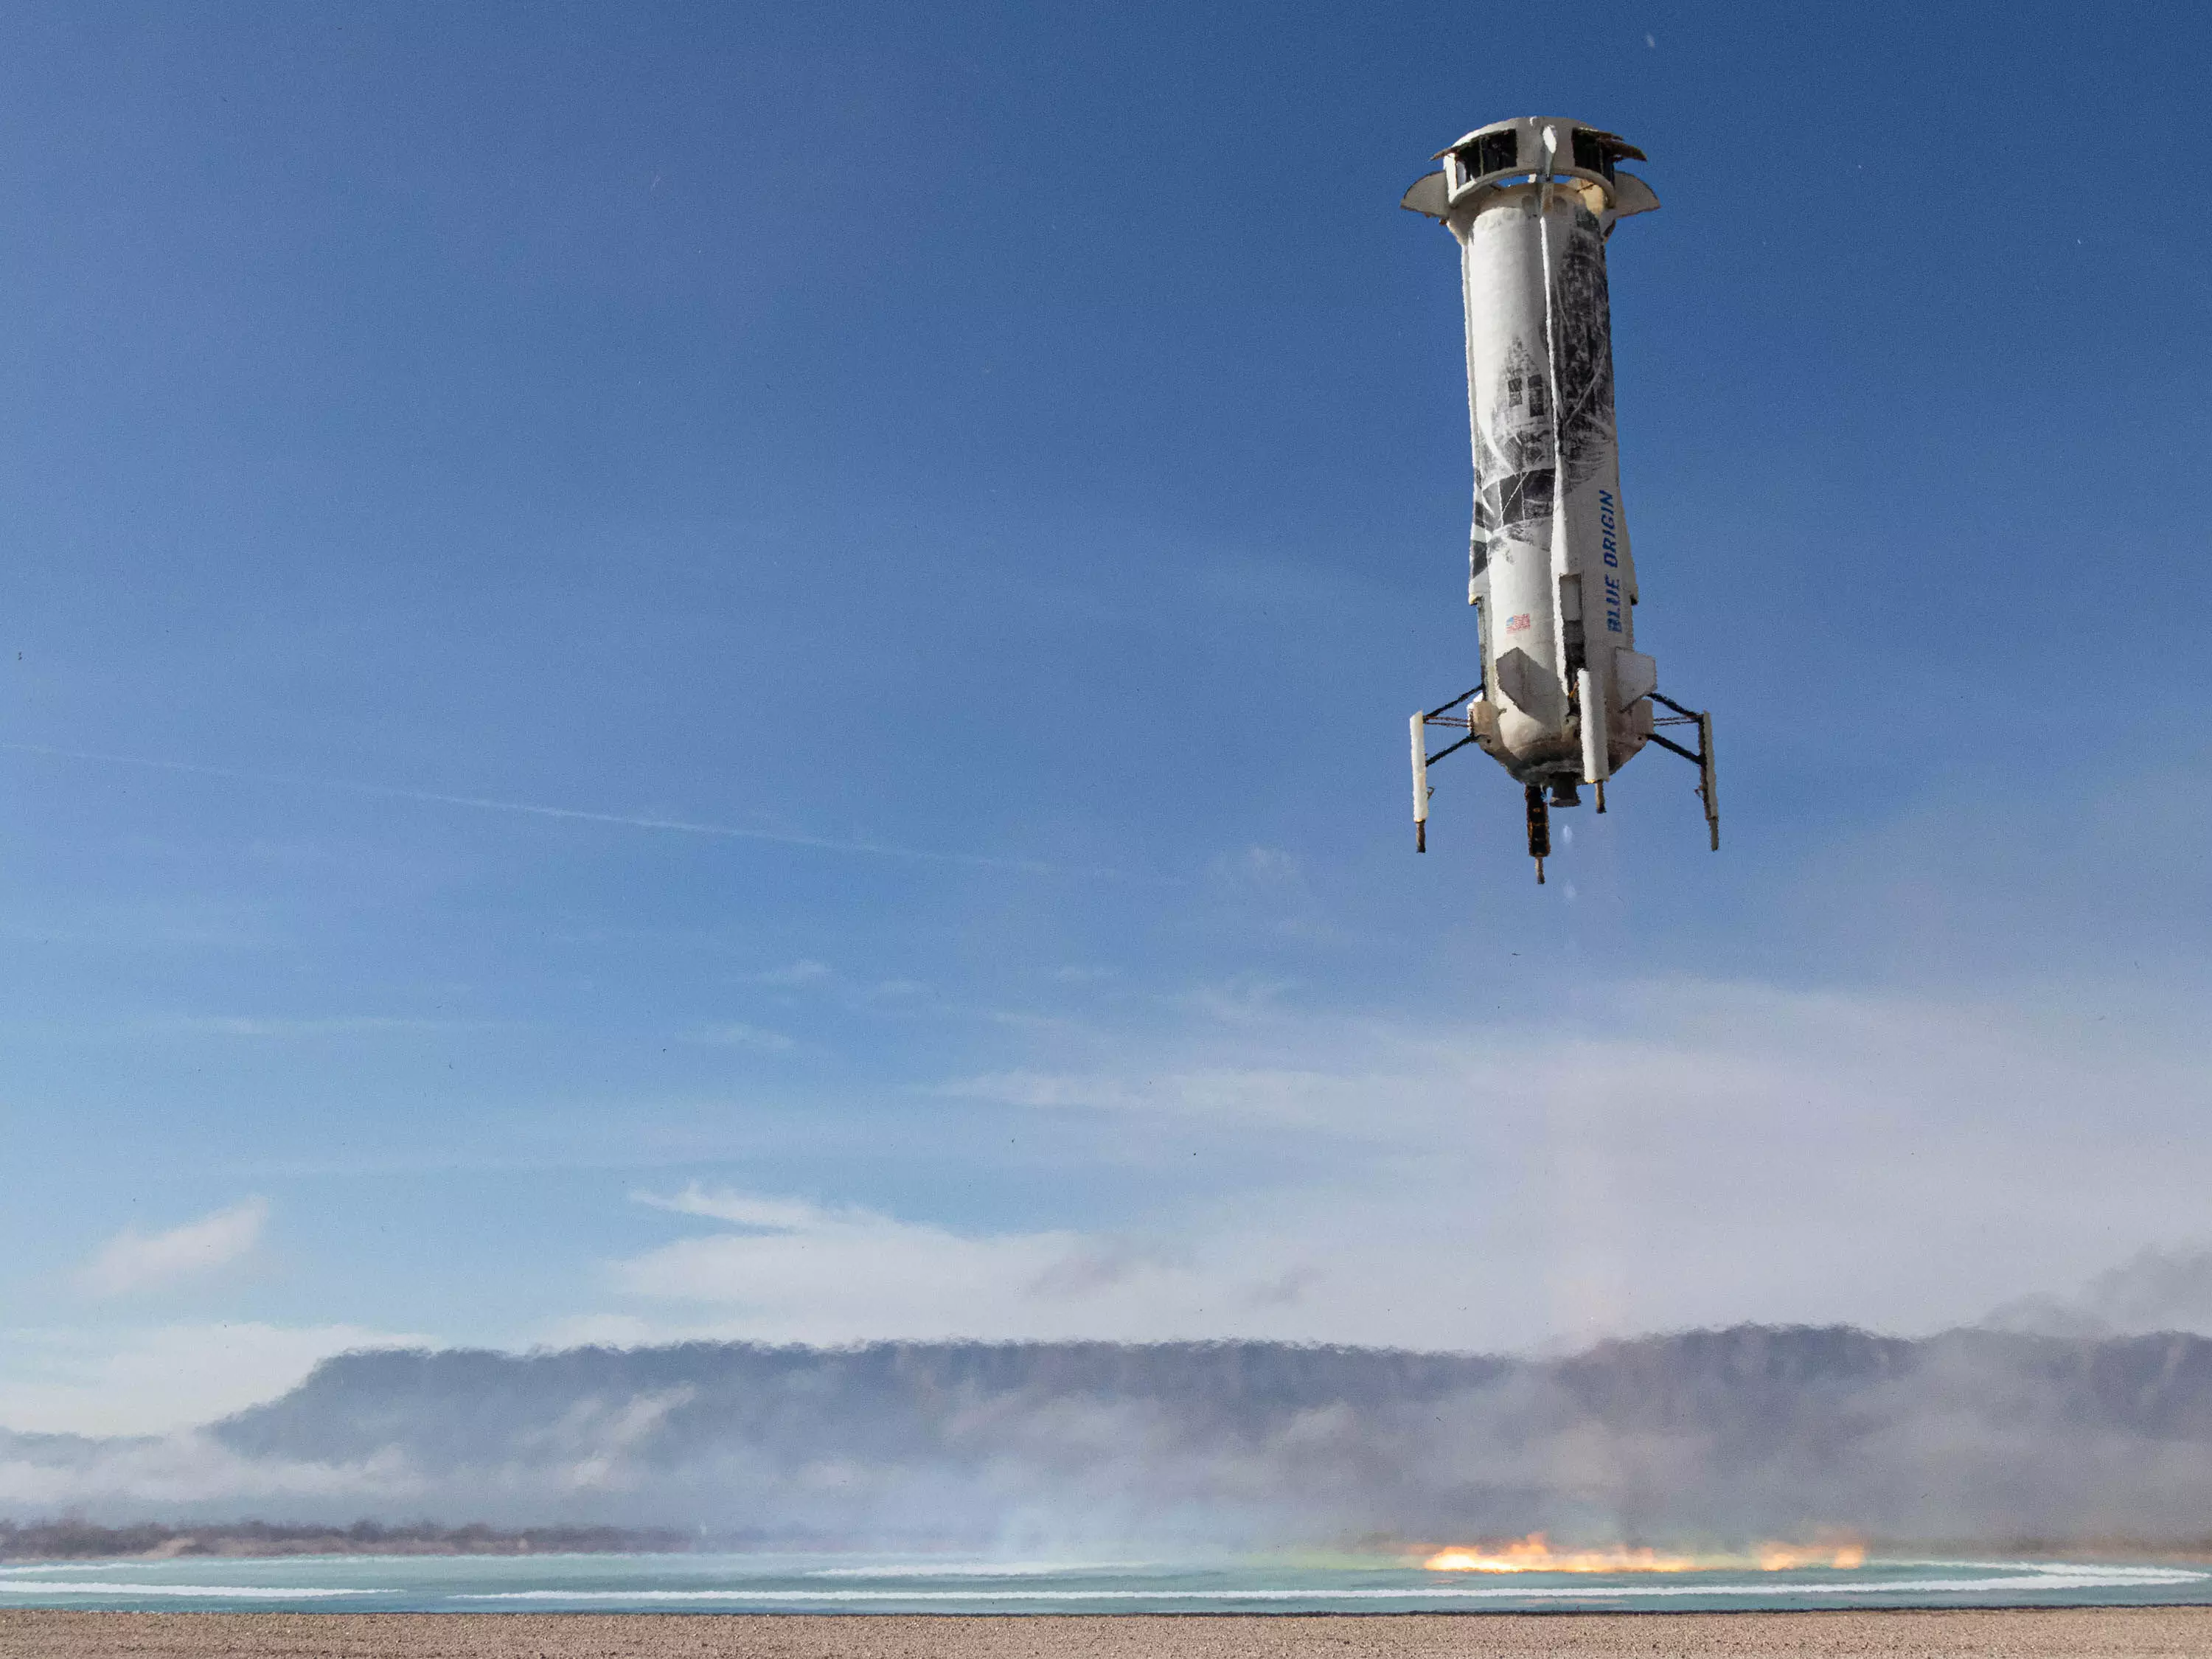 लागत कम करने के लिए Re-Landing तकनीक वाले रॉकेट बनाने का फैसला